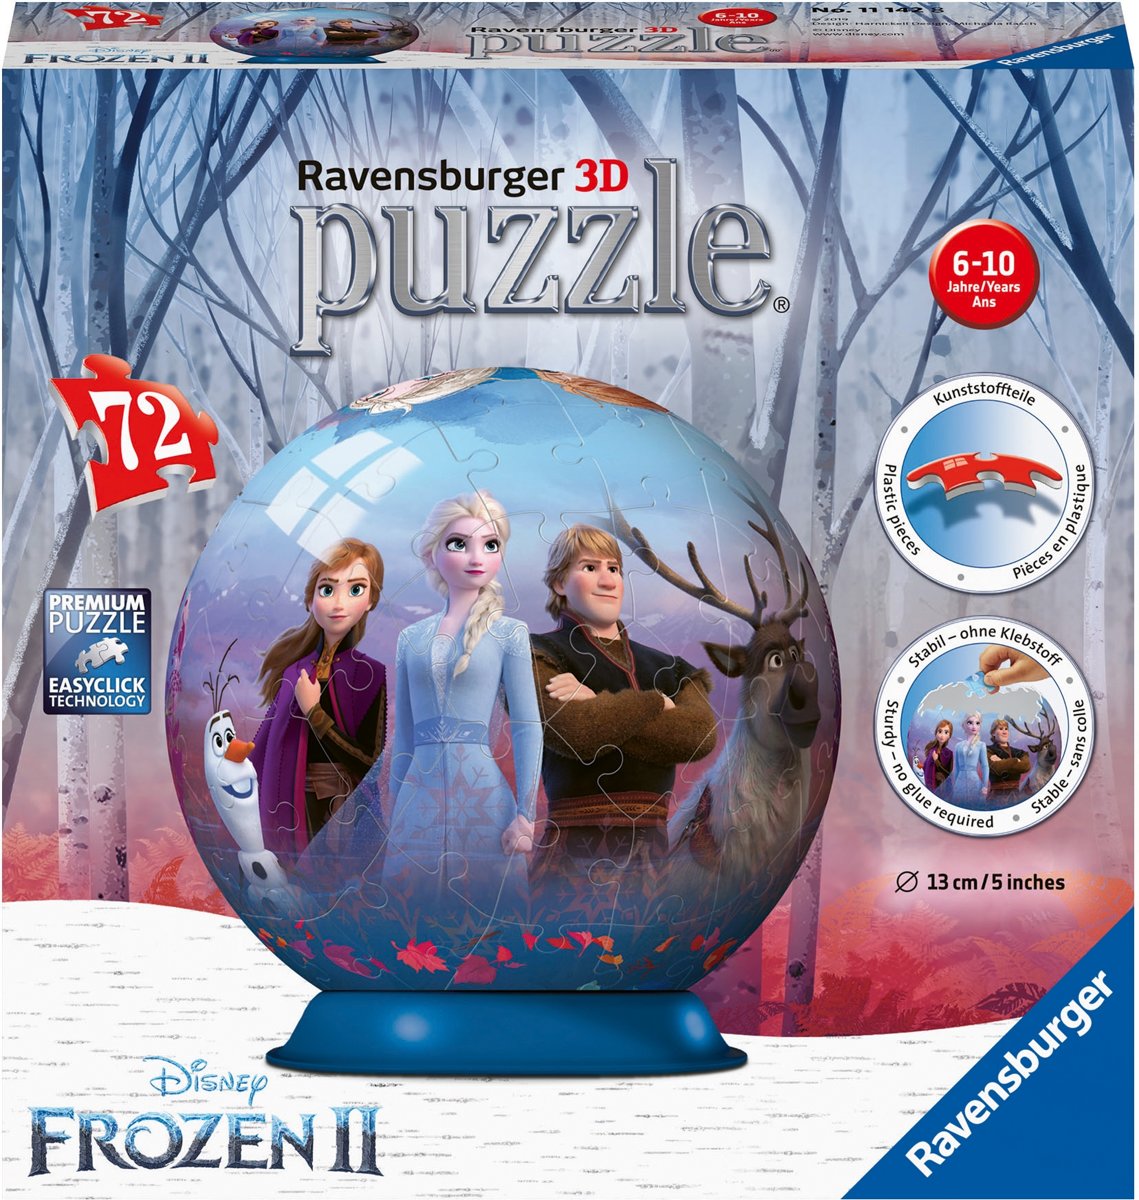   Disney Frozen 2 puzzleball - 3D Puzzel - 72 stukjes